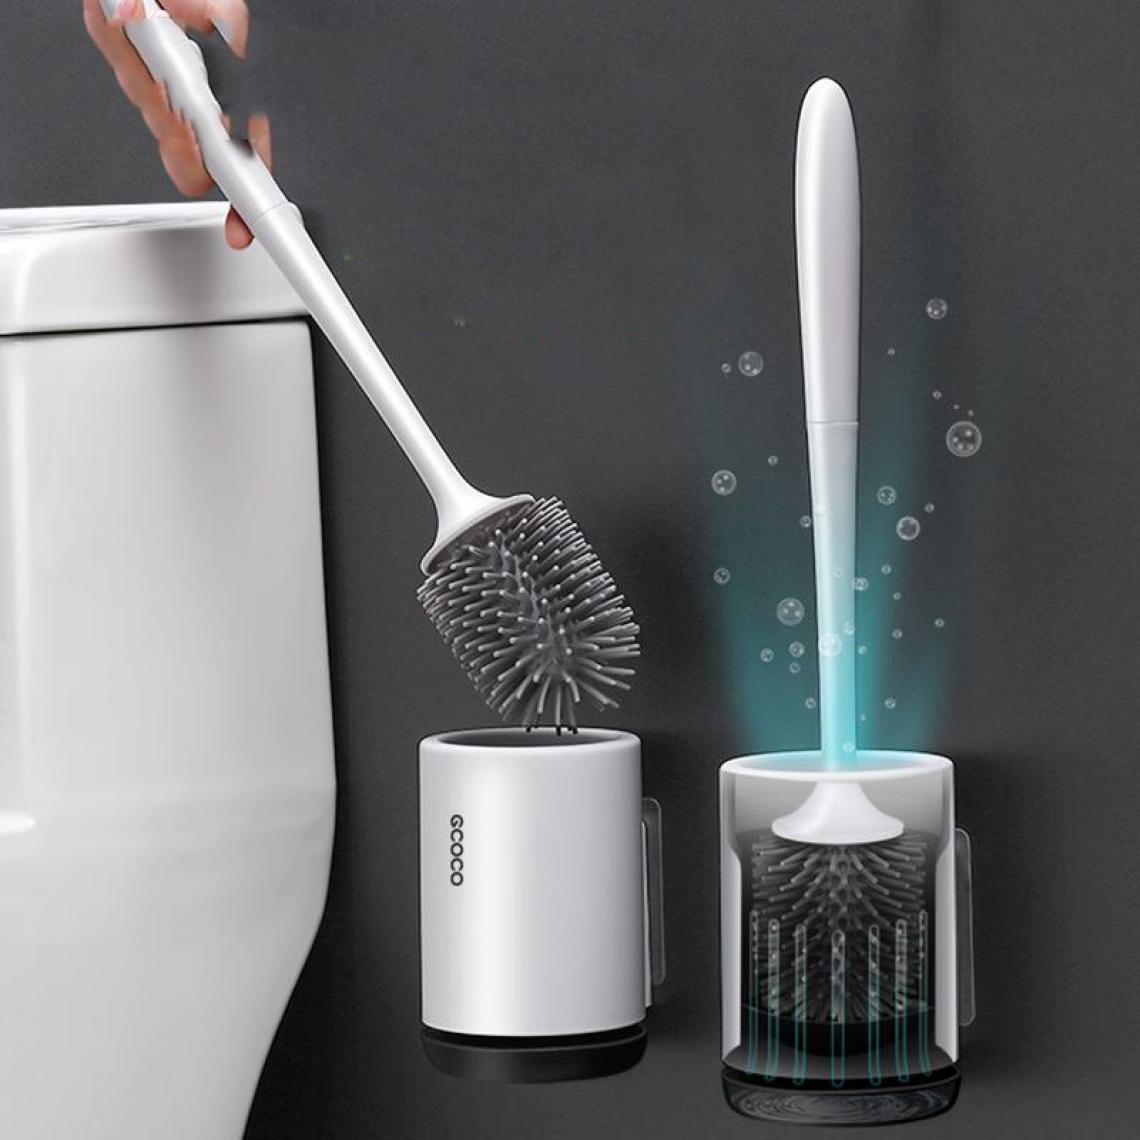 Universal - Brosse de toilette en silicone brosse douce brosse murale brosse sanitaire kit kit de nettoyage en caoutchouc thermoplastique durable. Porte-brosse de toilette(Le noir) - Accessoires de salle de bain